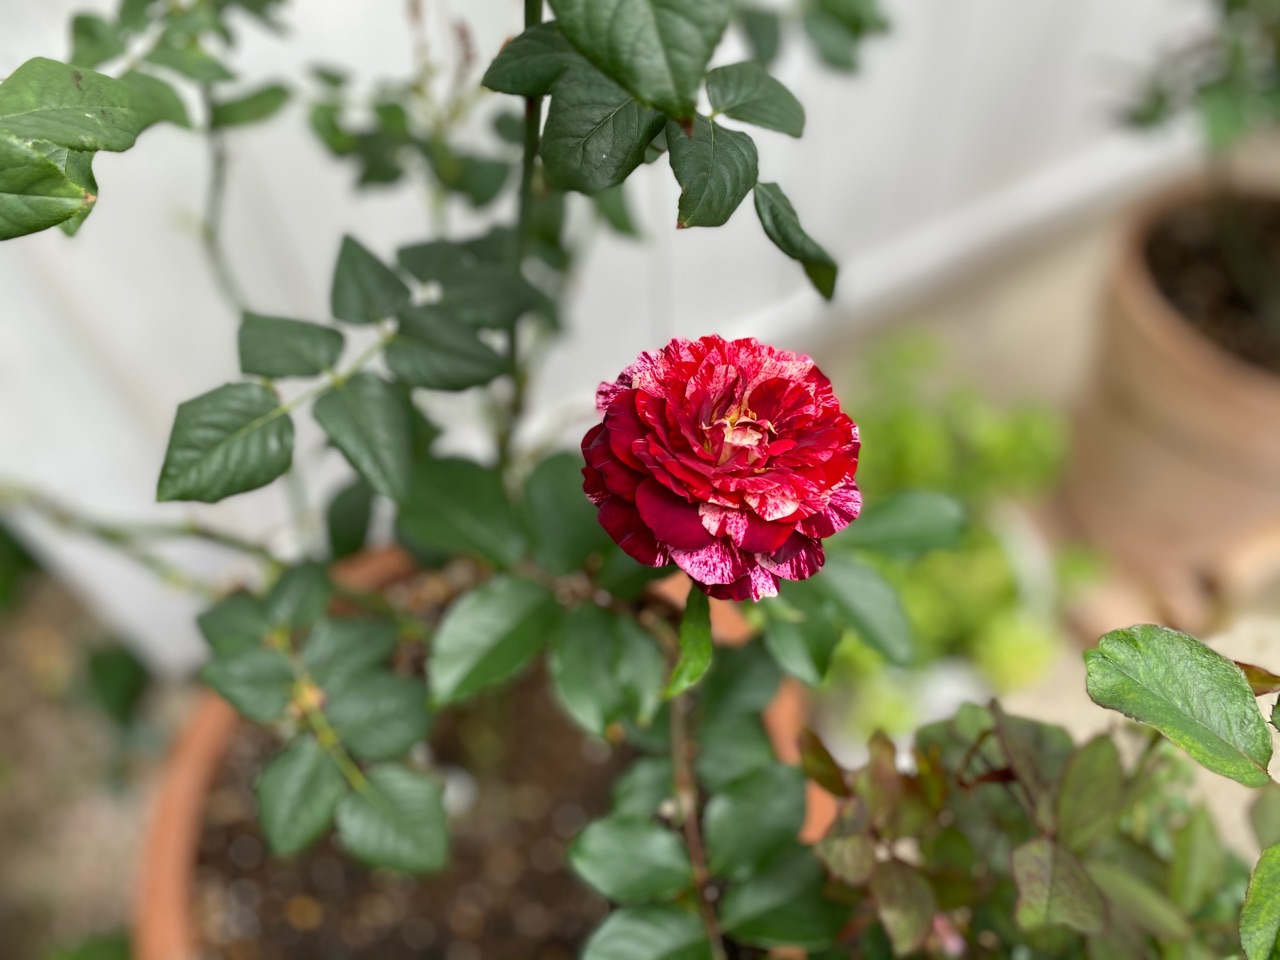 バラ二番花と葉の色が クロロシス のばらのガーデニングブログ Hana And Rose Garden Powered By ライブドアブログ